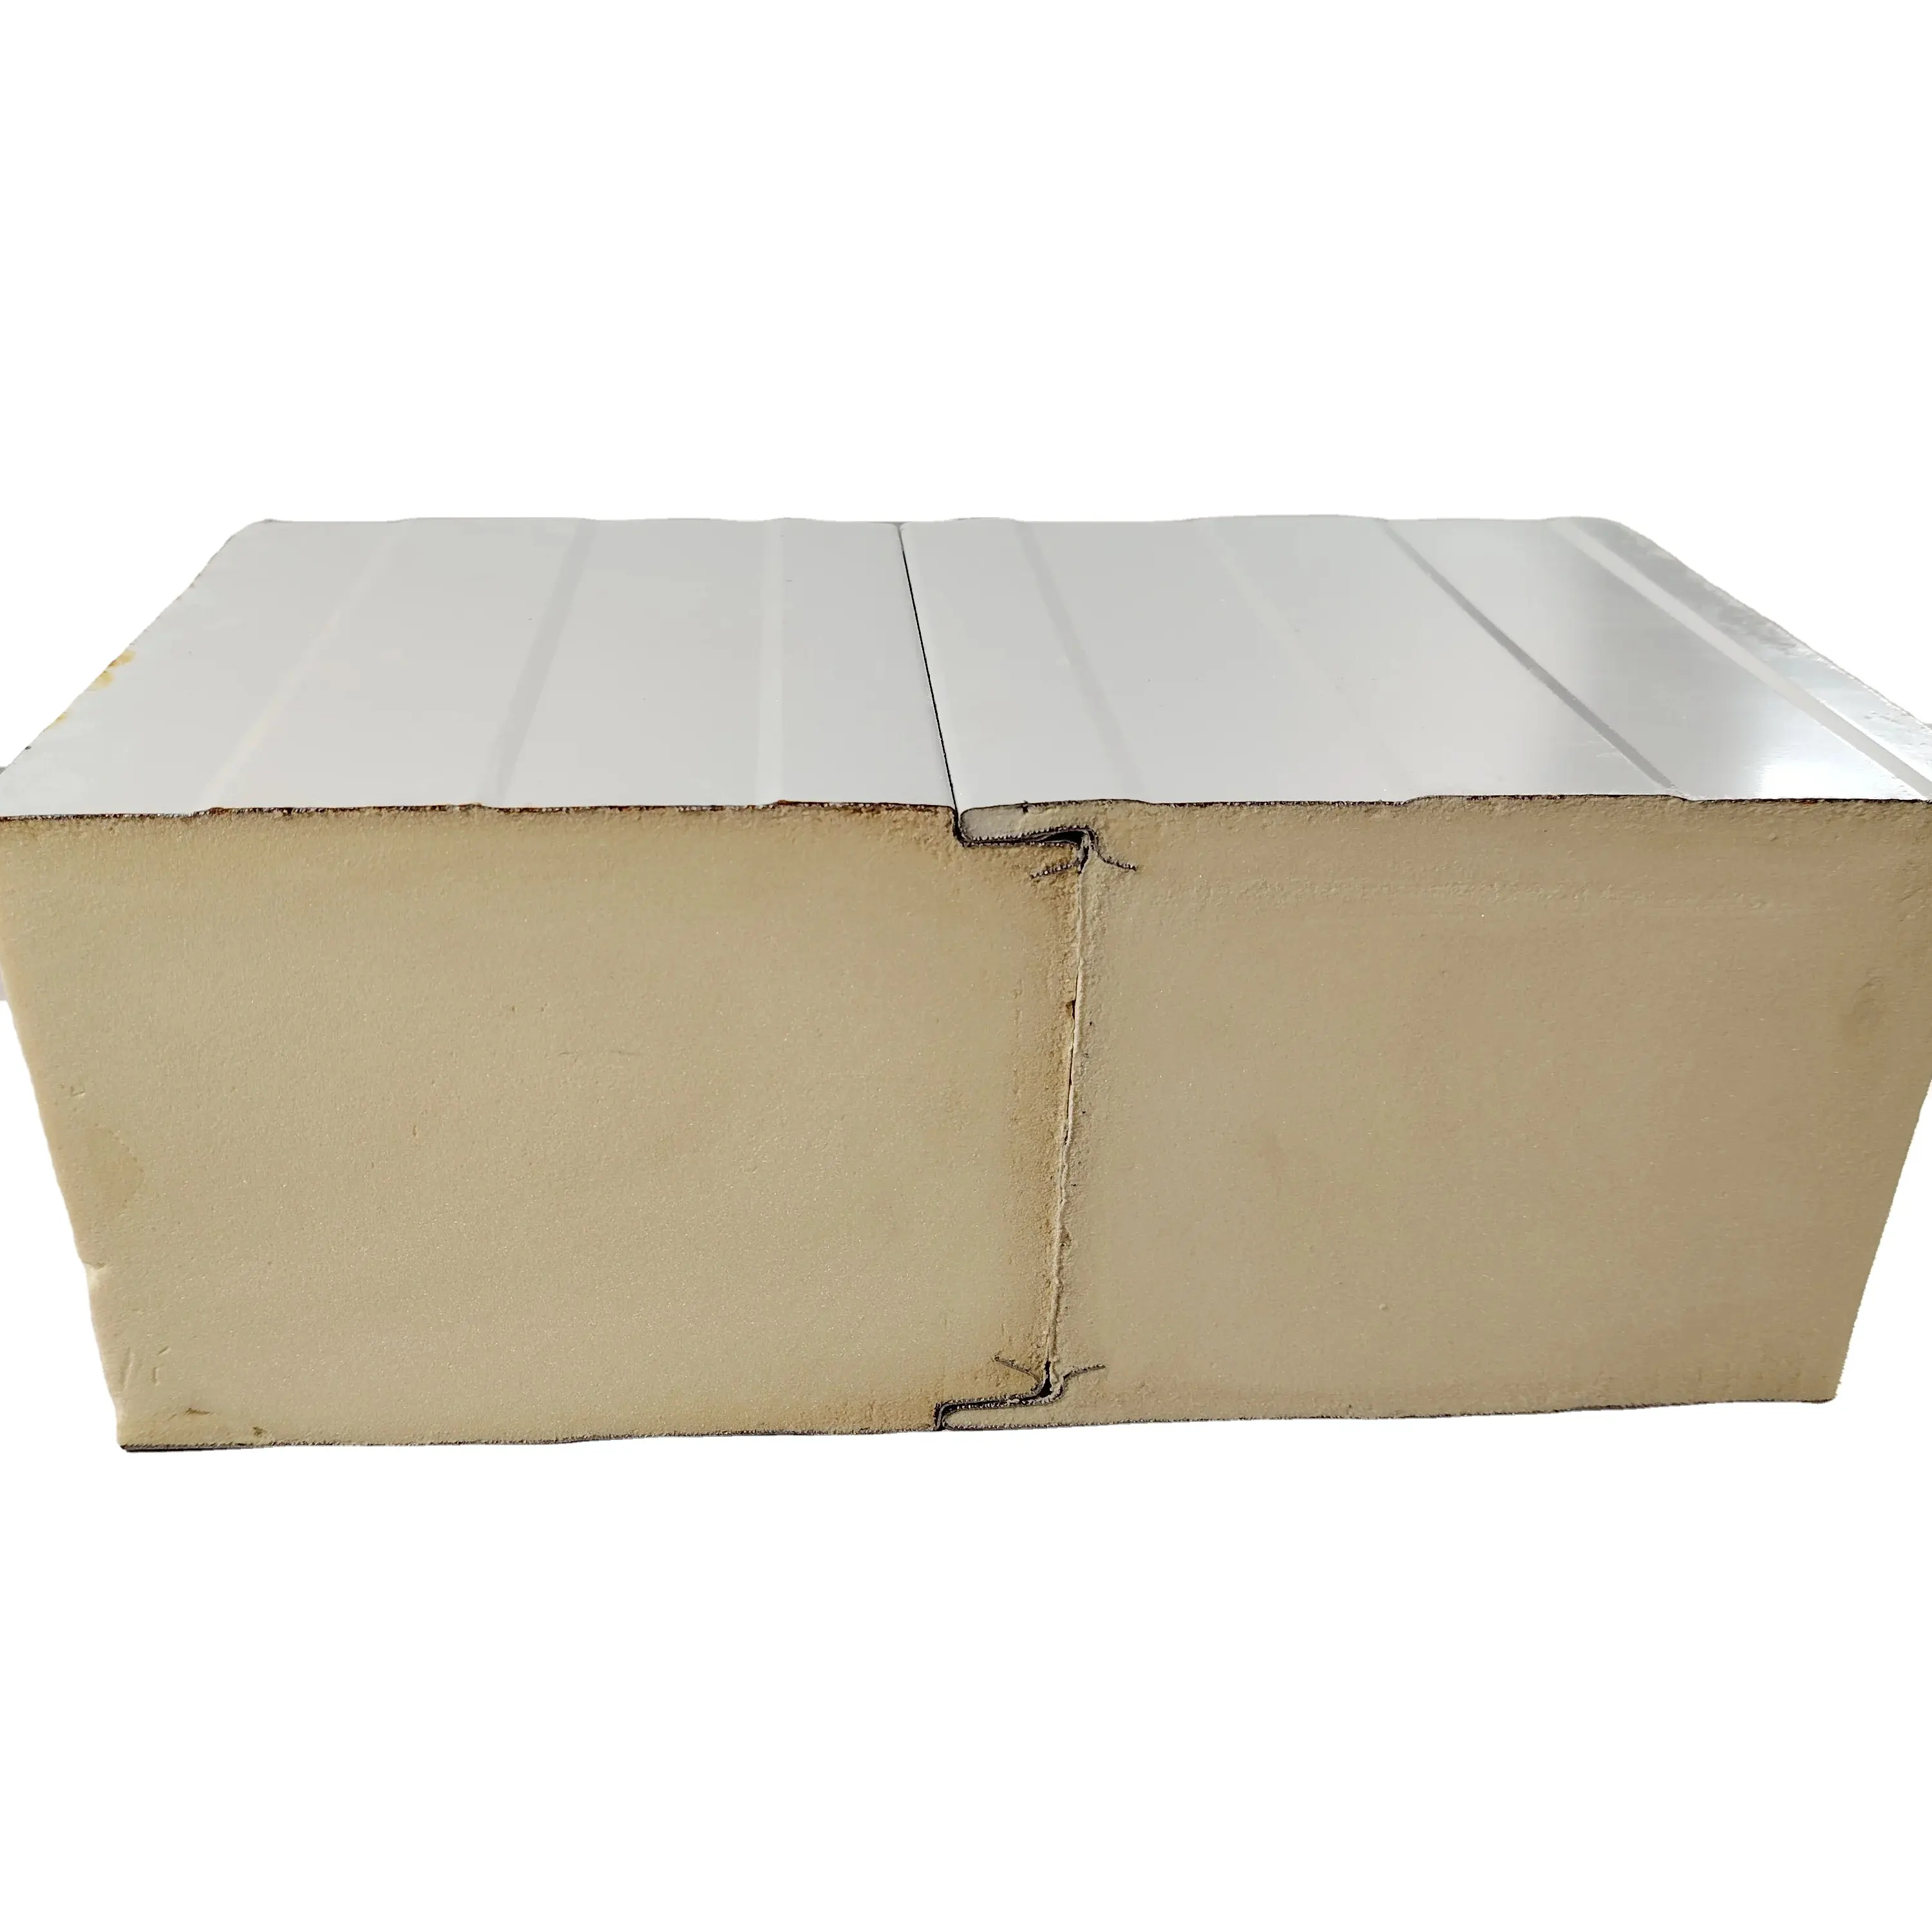 Panneaux sandwich muraux en polyuréthane de bonne qualité pour toit et mur